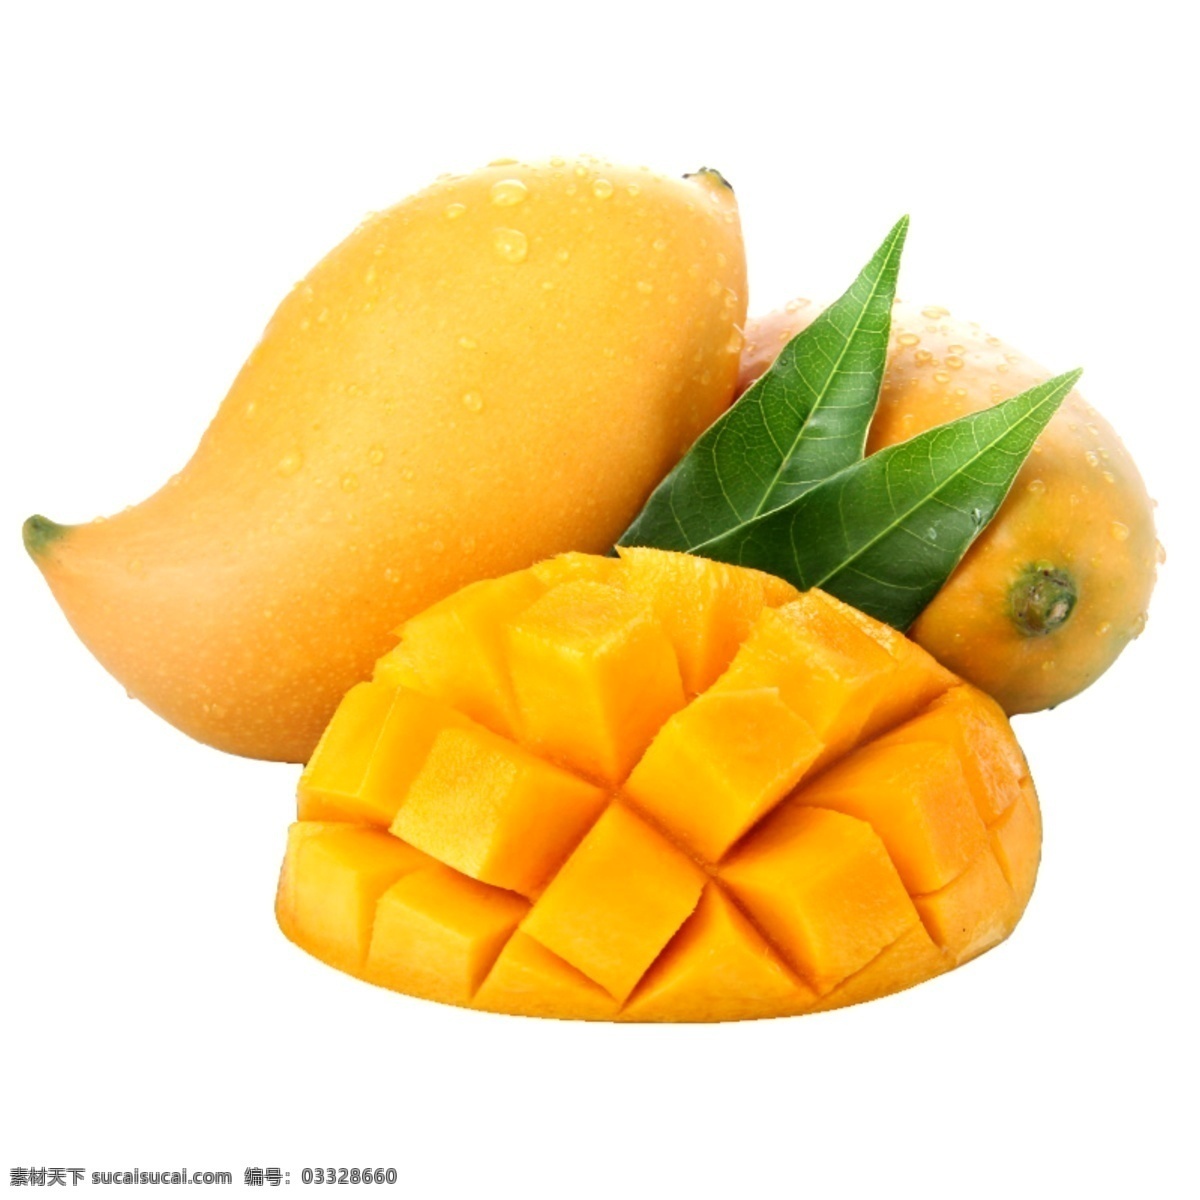 芒果图片 芒果 水果 绿芒果 黄芒果 成熟水果 成熟芒果 素材图